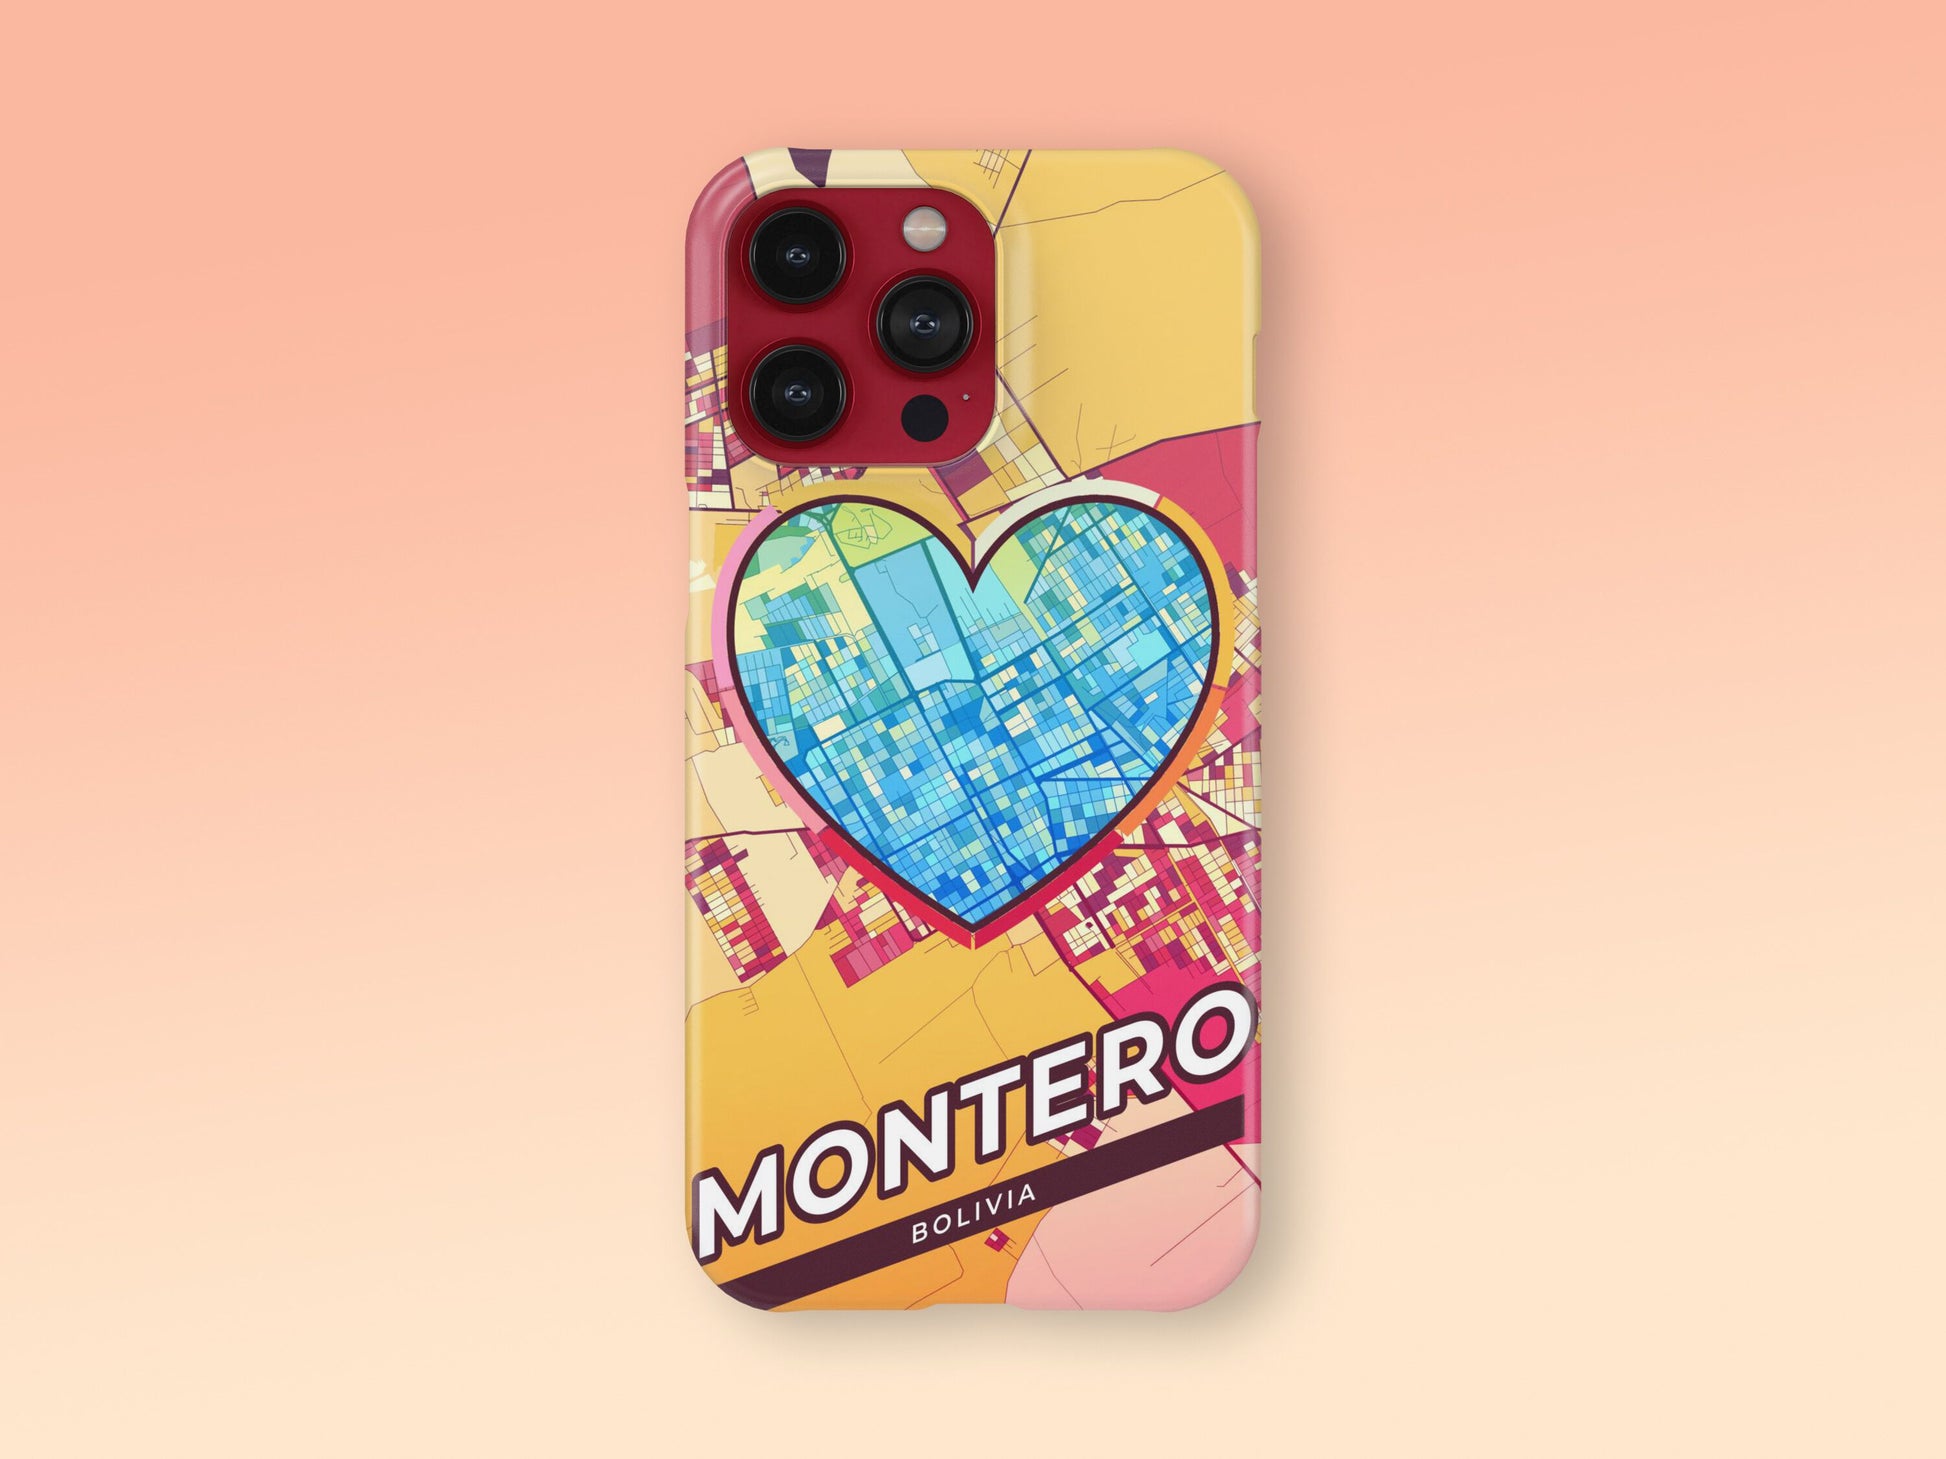 Montero Bolivia slim phone case with colorful icon 2